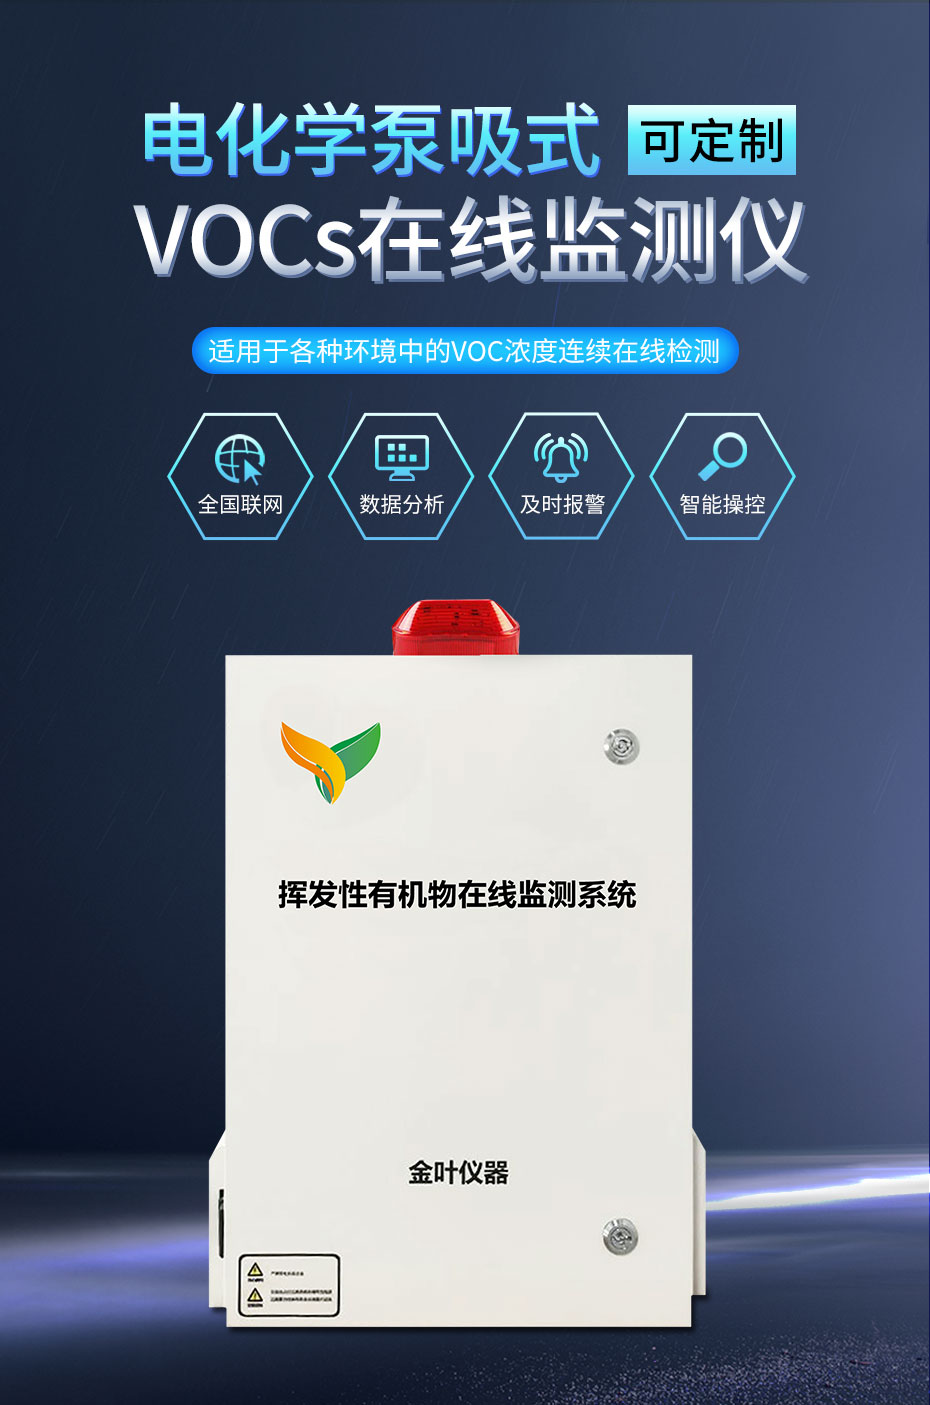 vocs在线监测设备在环境中的应用